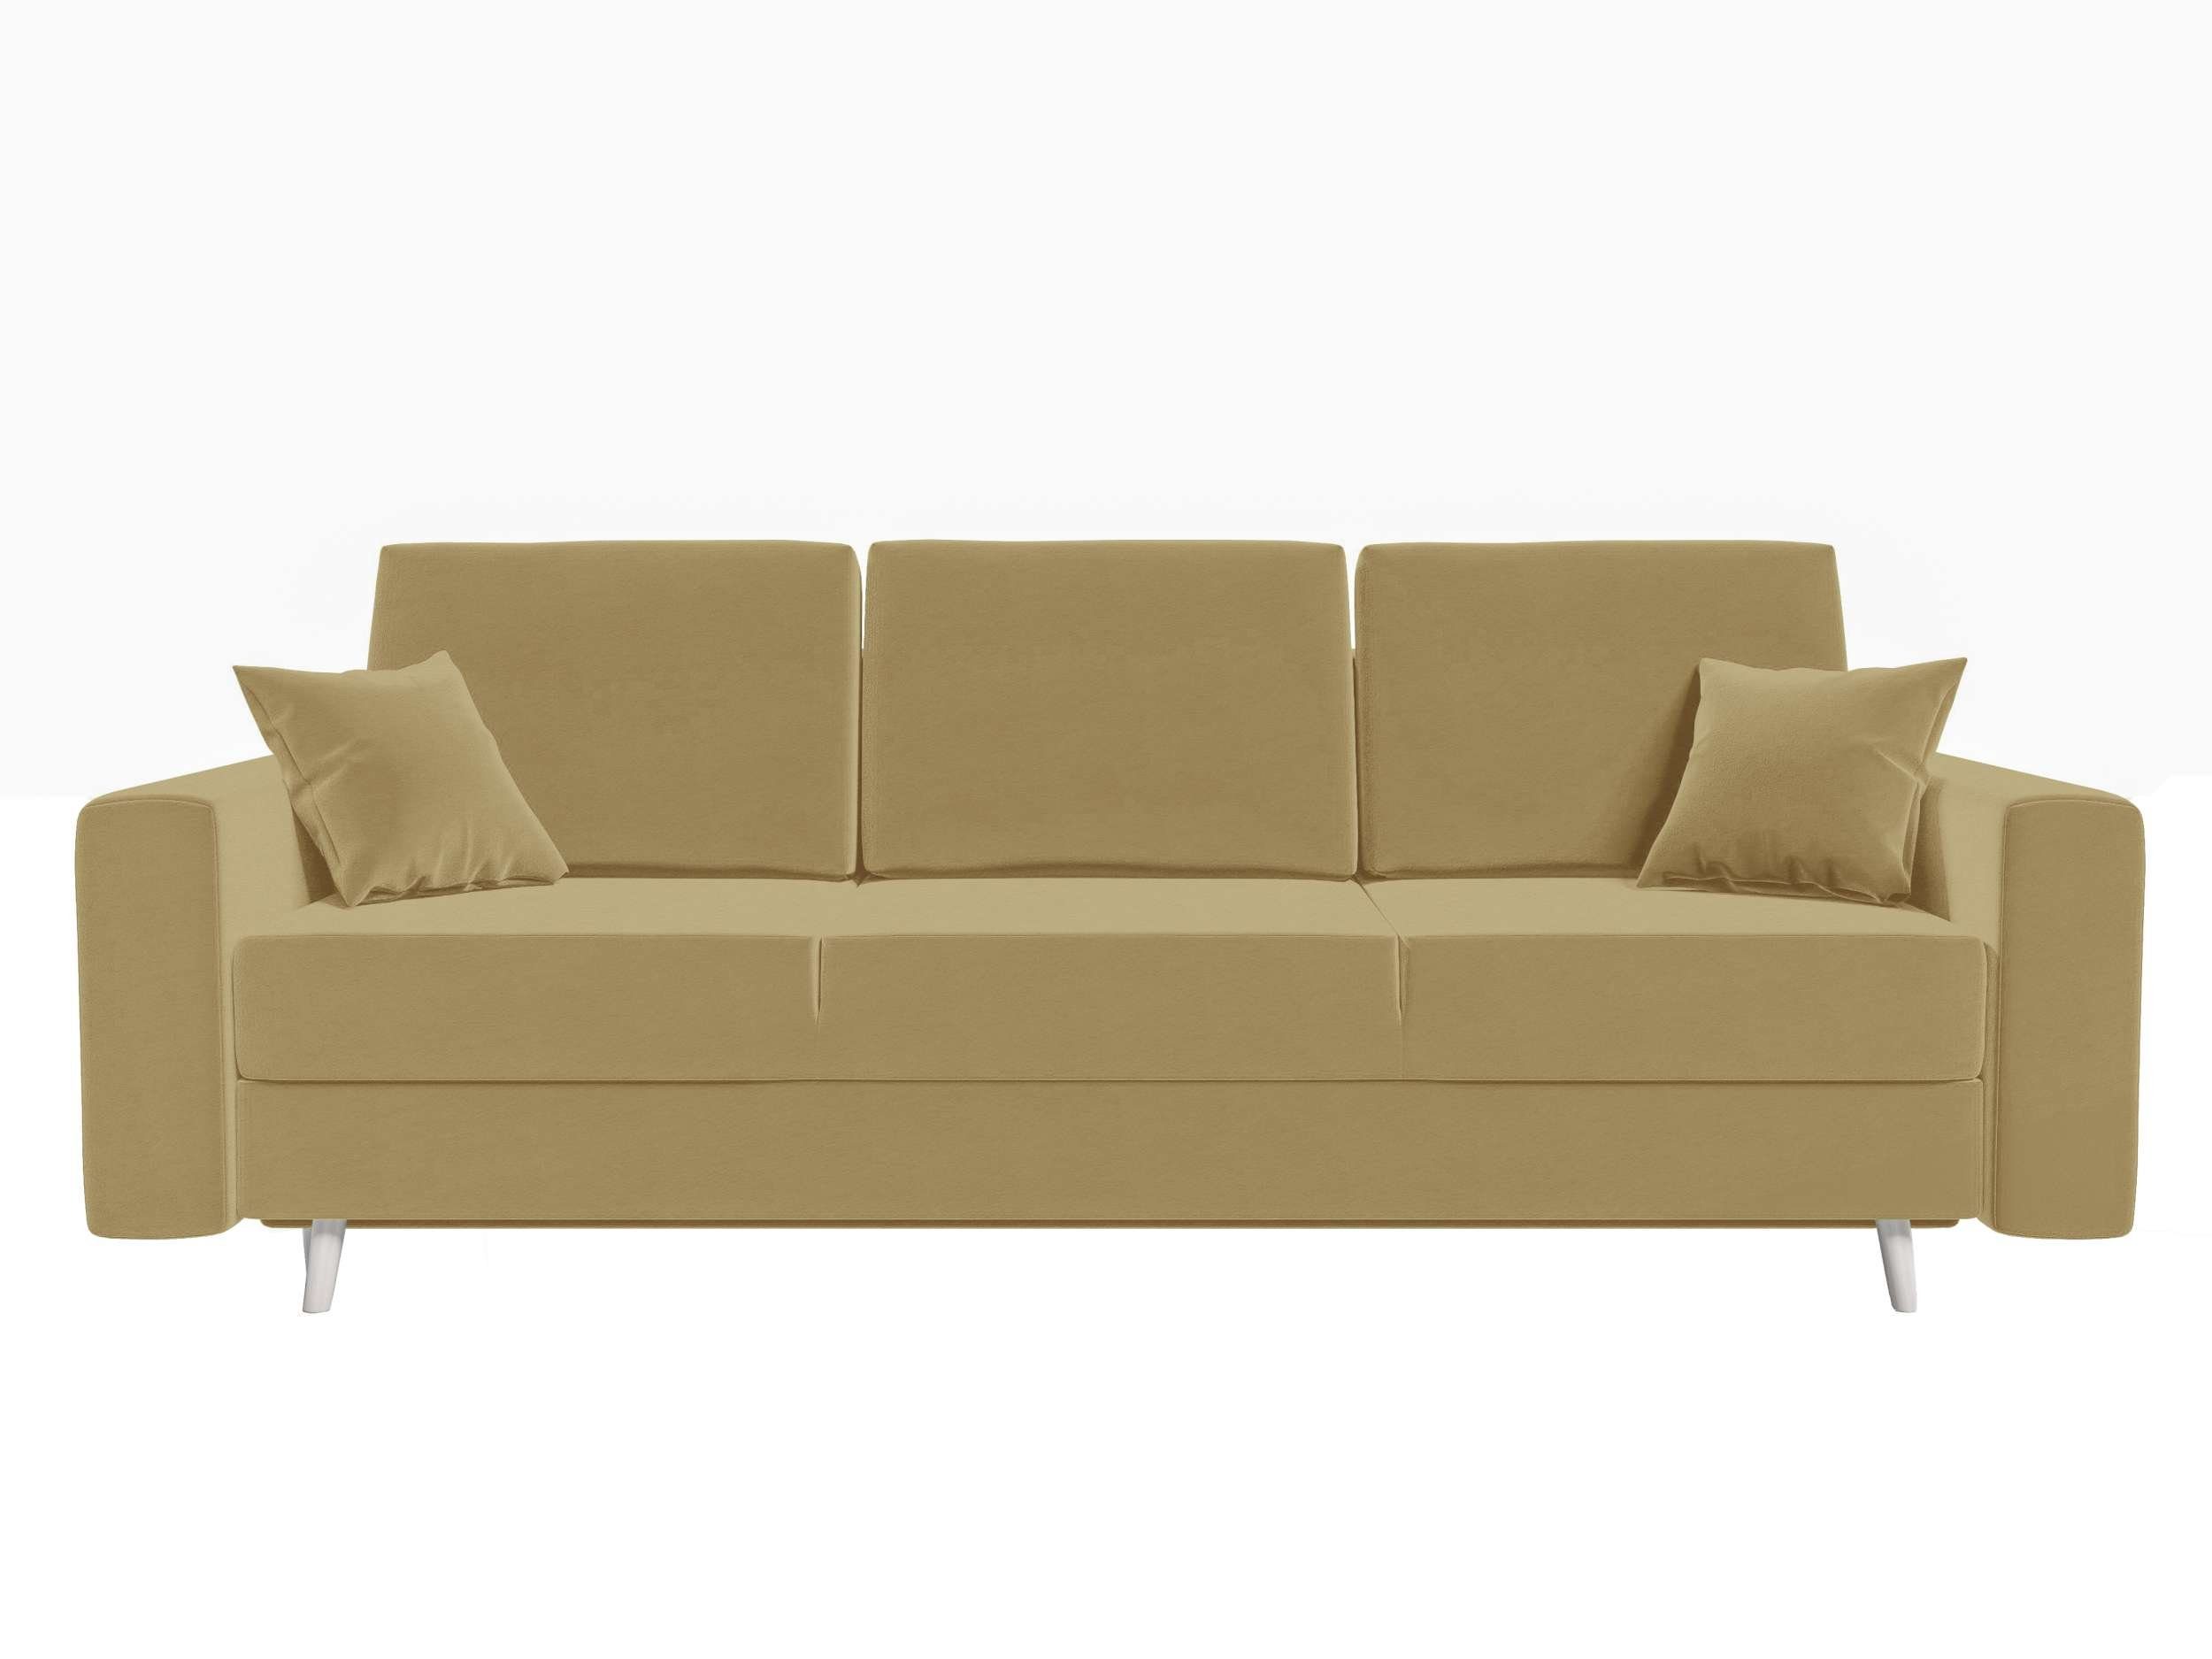 Carmen, Bettkasten, mit Bettfunktion, mit Sitzkomfort, 3-Sitzer Schlafsofa, Stylefy Modern Sofa, Design